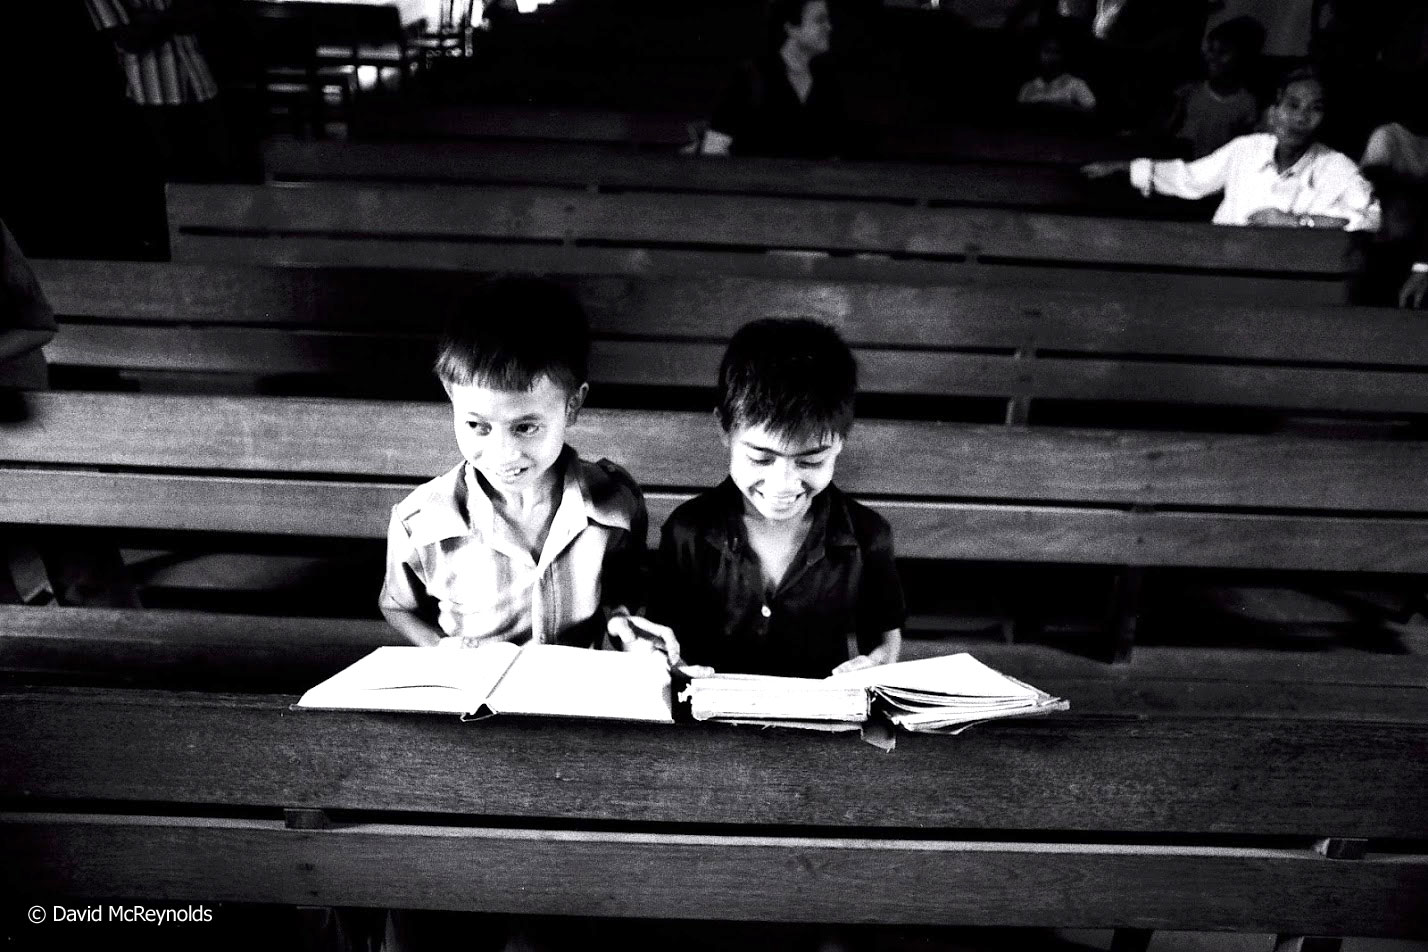  Children in a church, 1981. 